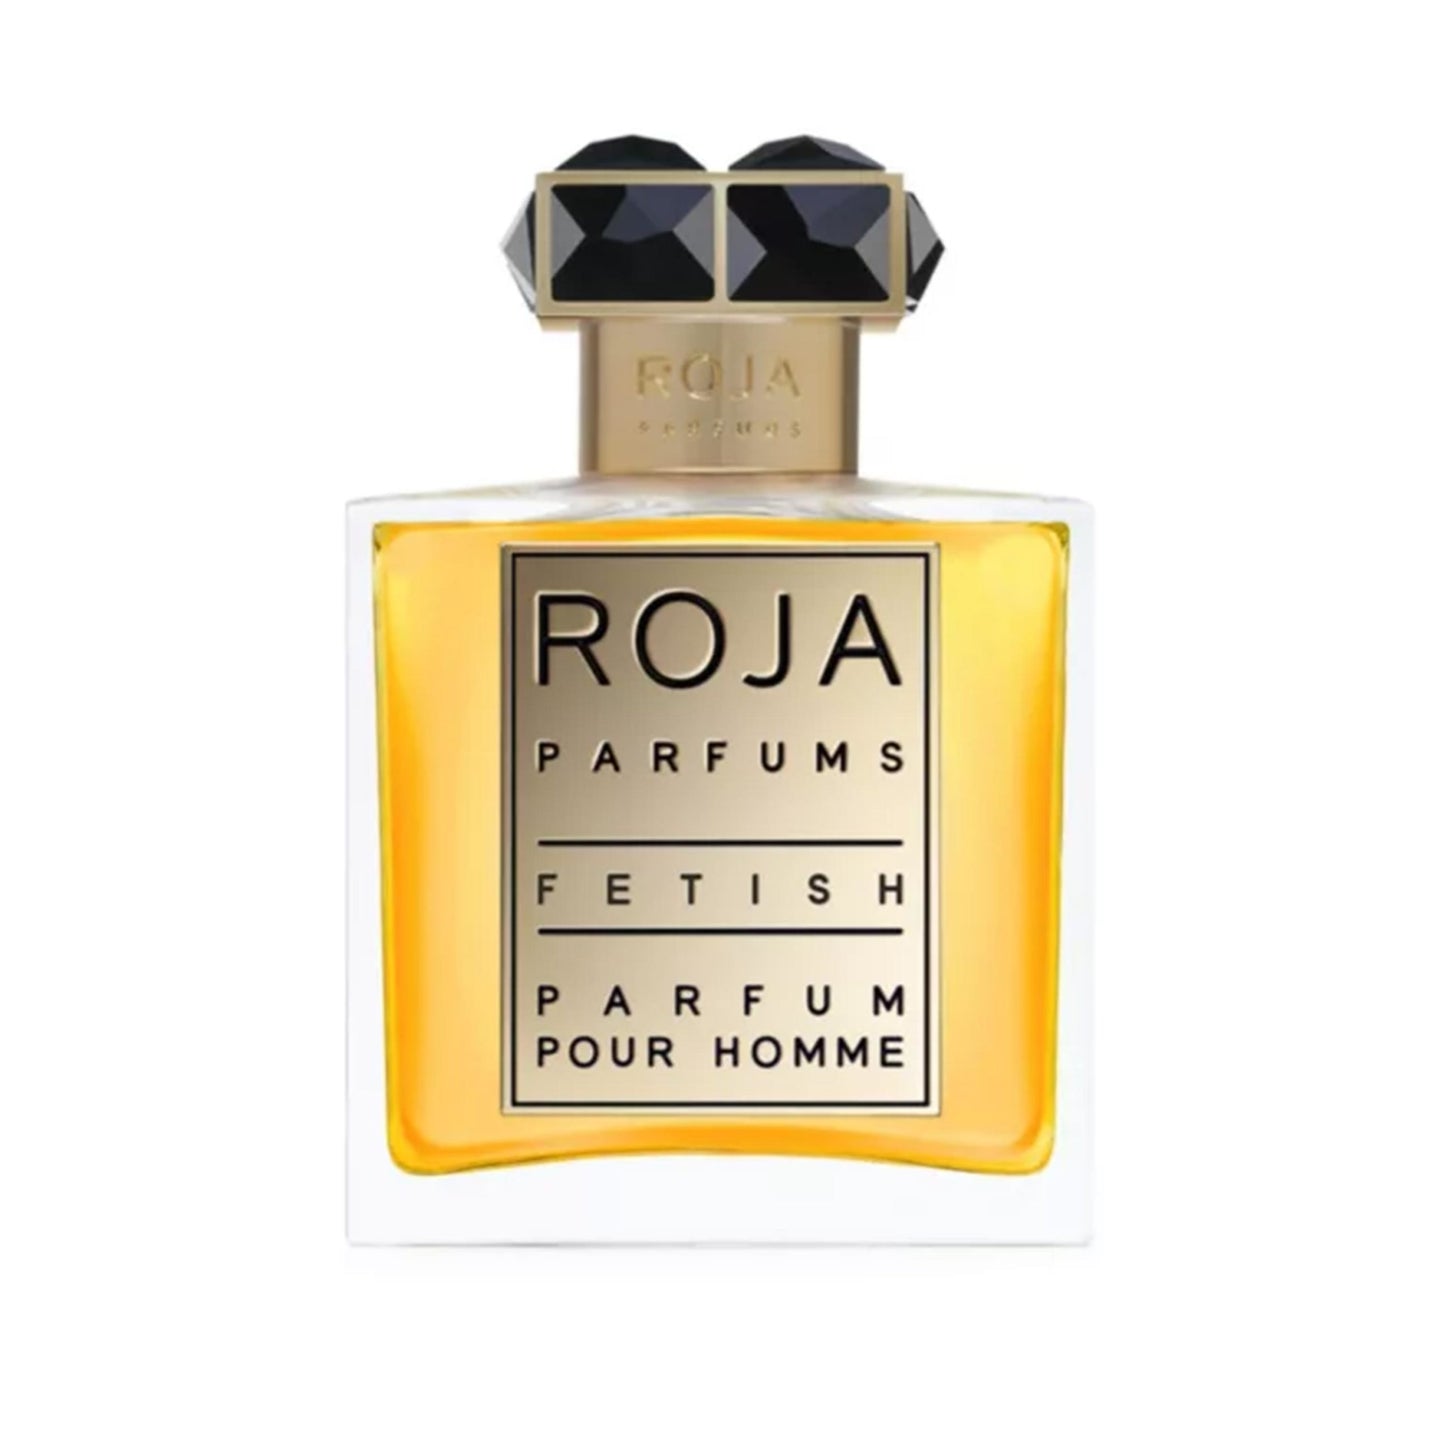 Roja - Fetish Parfum Pour Homme.